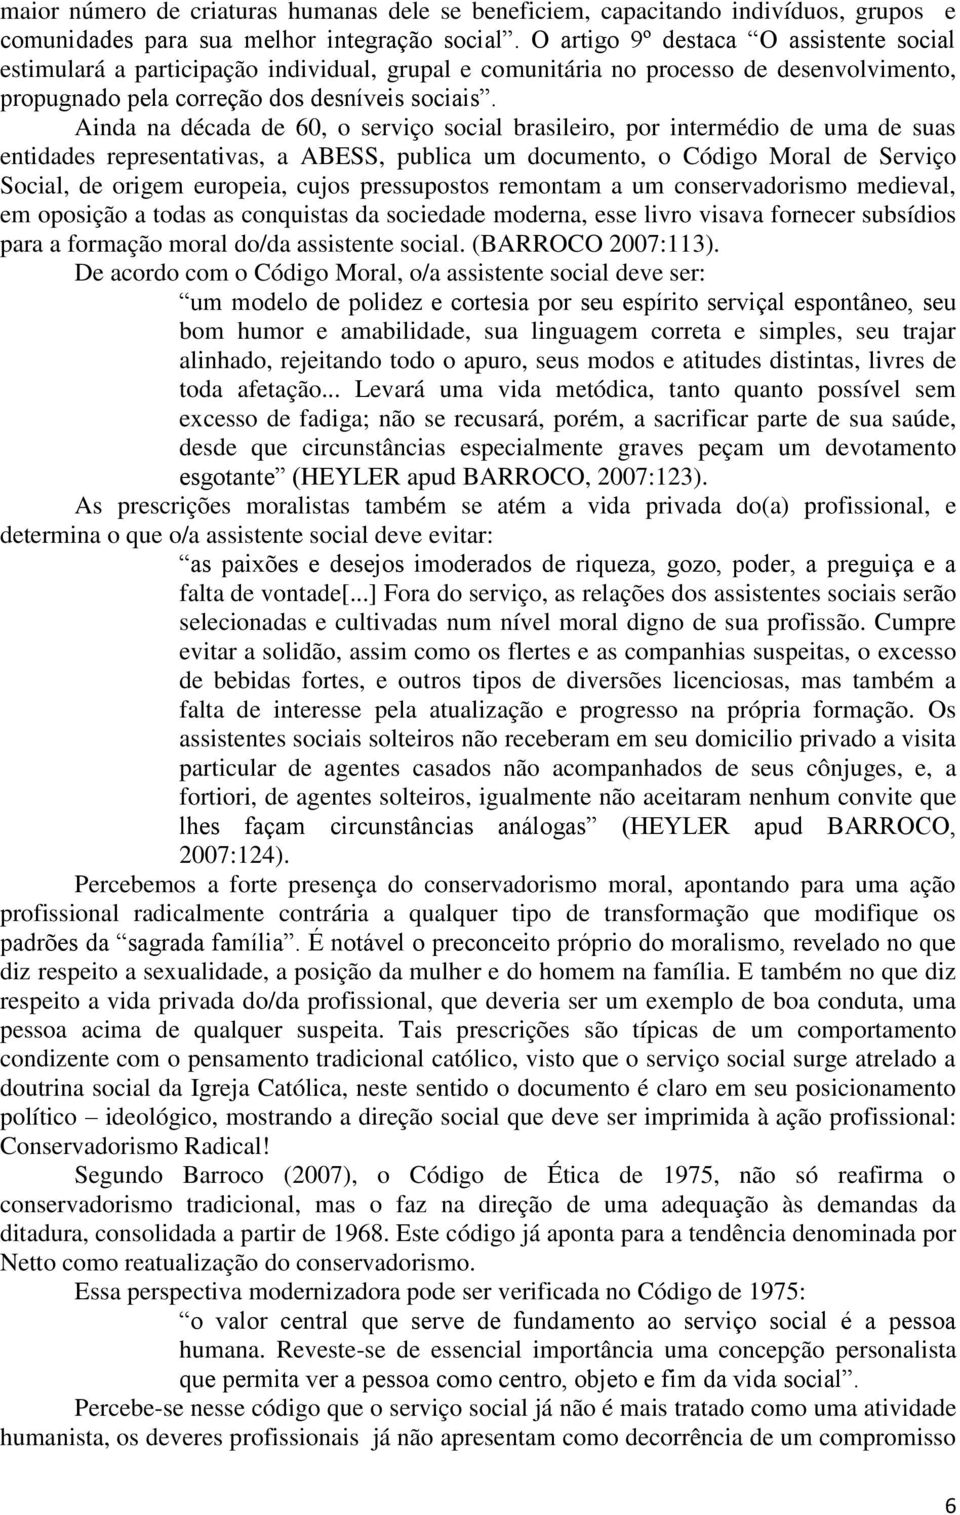 Ainda na década de 60, o serviço social brasileiro, por intermédio de uma de suas entidades representativas, a ABESS, publica um documento, o Código Moral de Serviço Social, de origem europeia, cujos